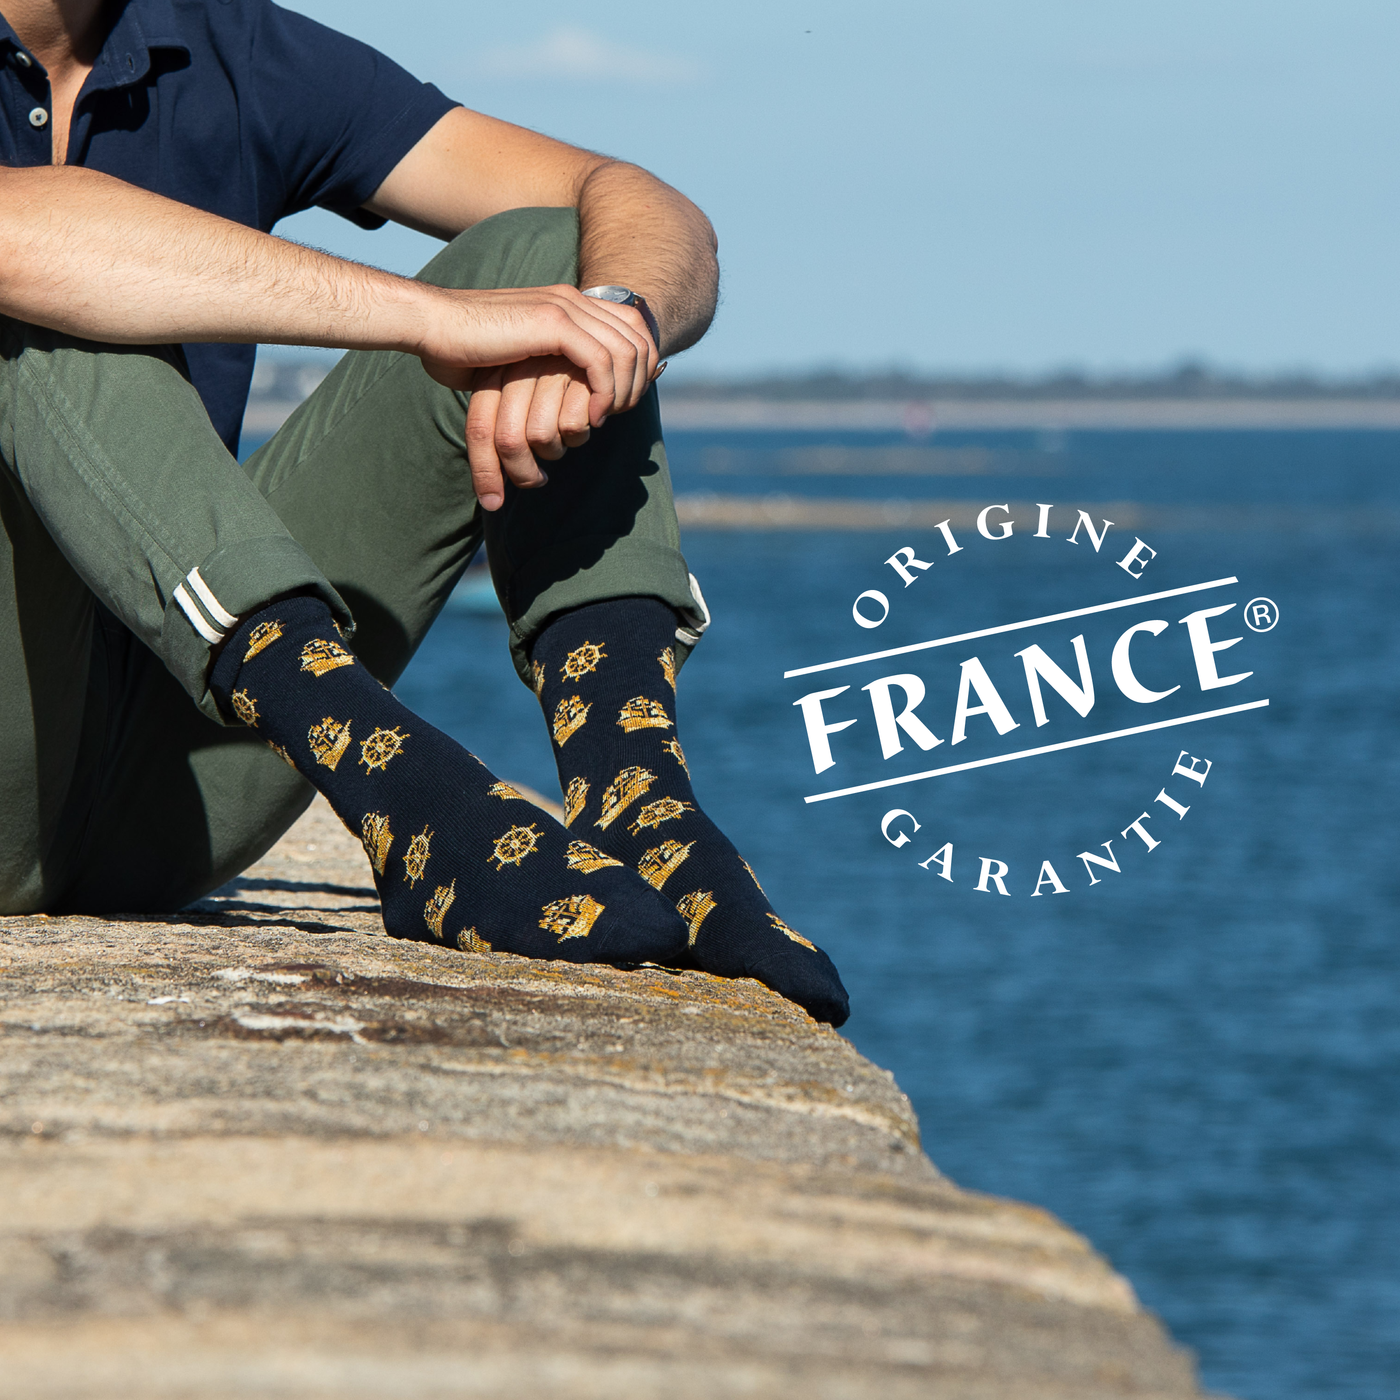 Chaussettes Label Origine France Garantie : l'exigence de qualité fabriquée en France